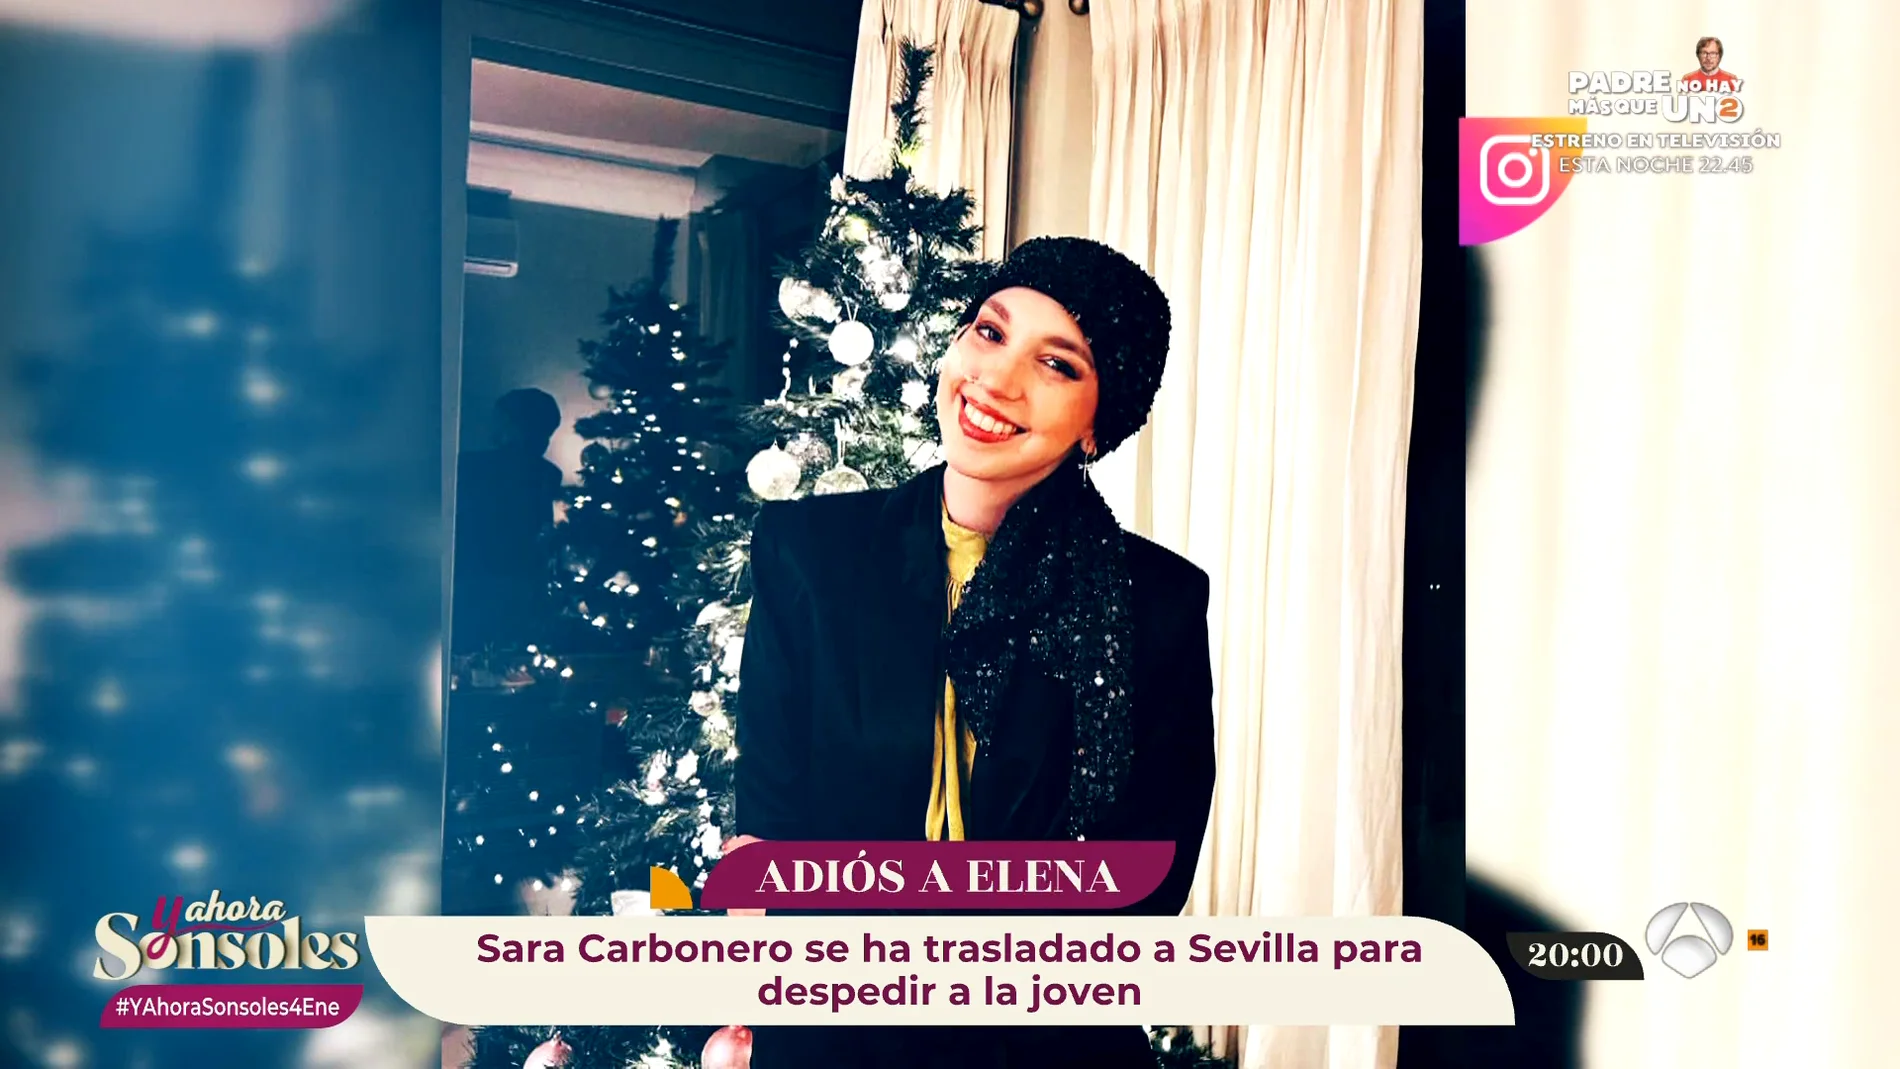 Sara Carbonero o Aitana: los famosos se despiden de Elena Huelva en sus redes sociales